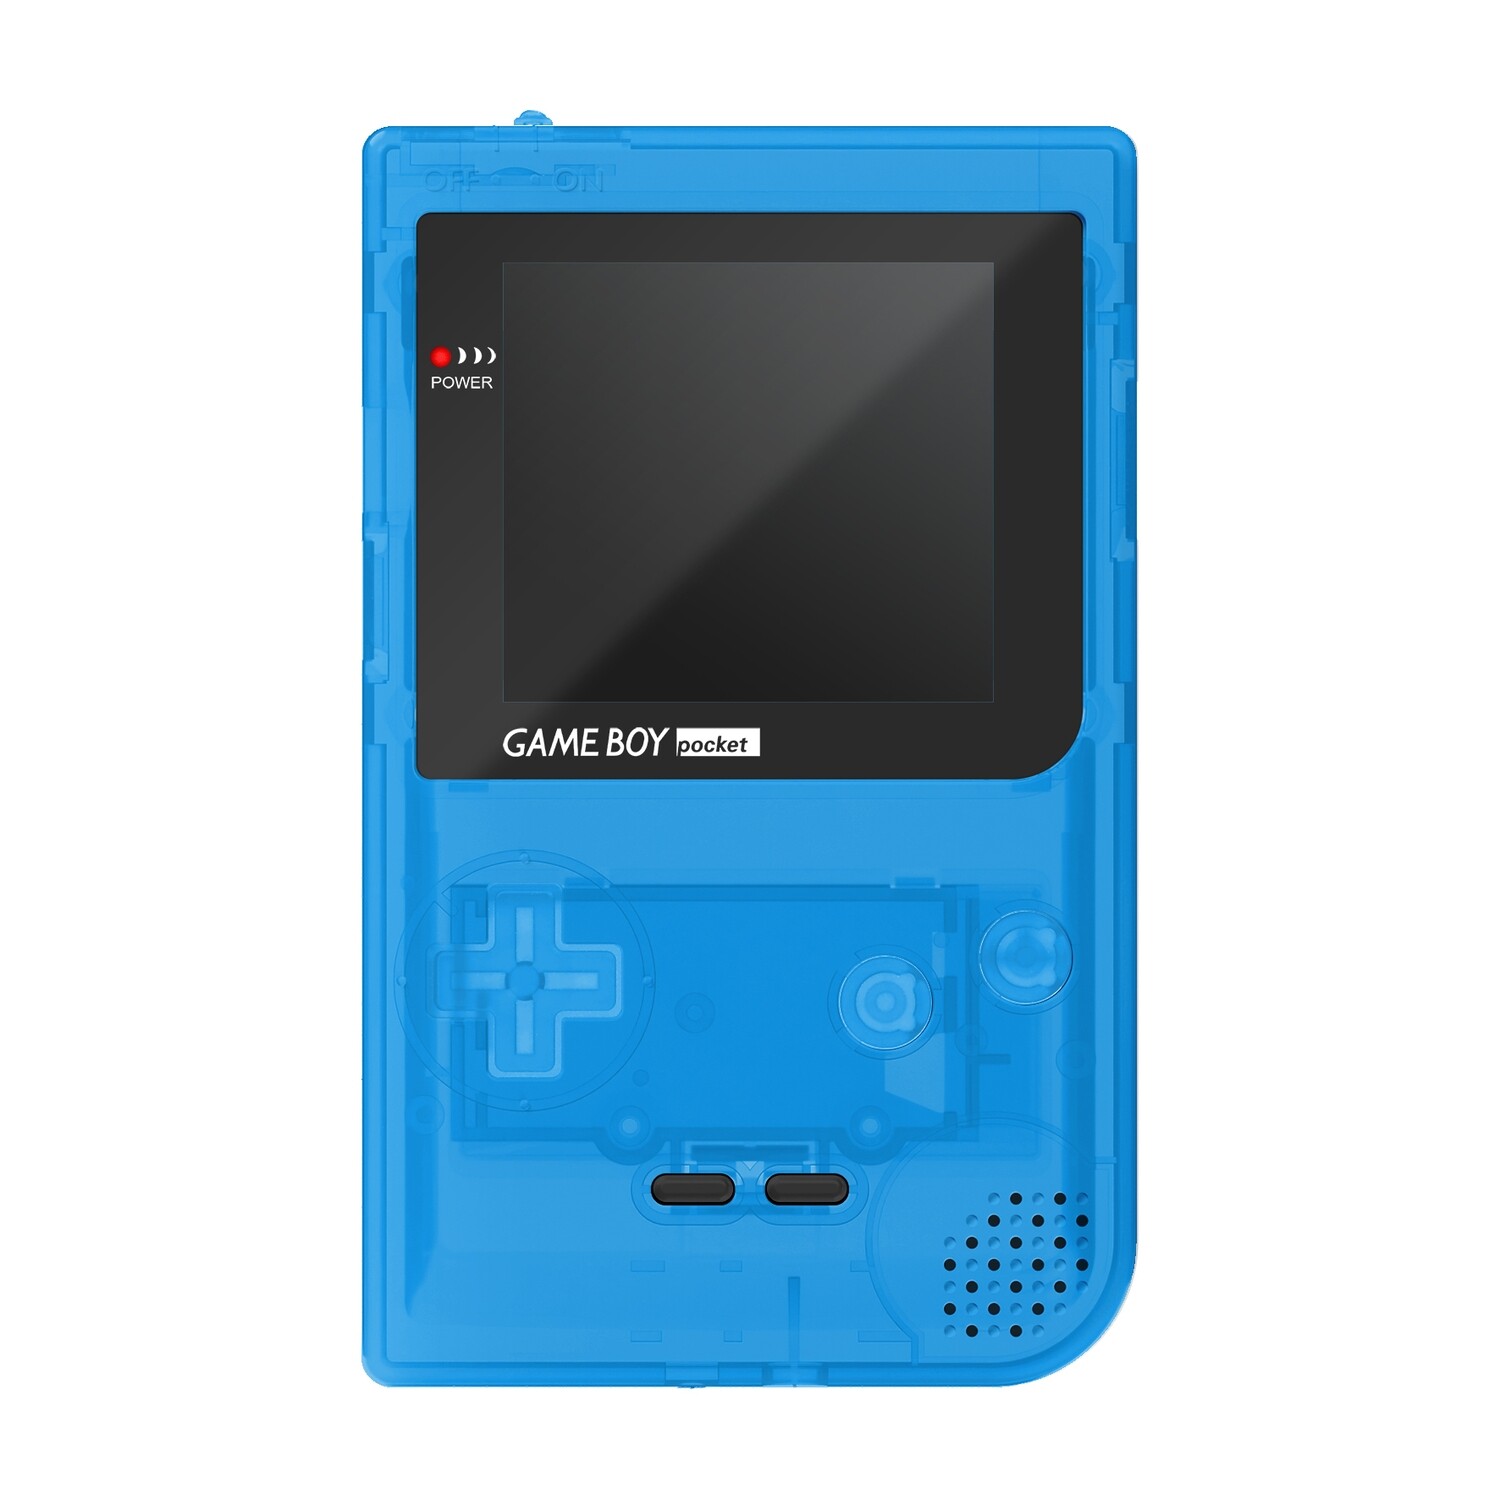 Game Boy Pocket Console: Prestige Edition (Clear Blue)